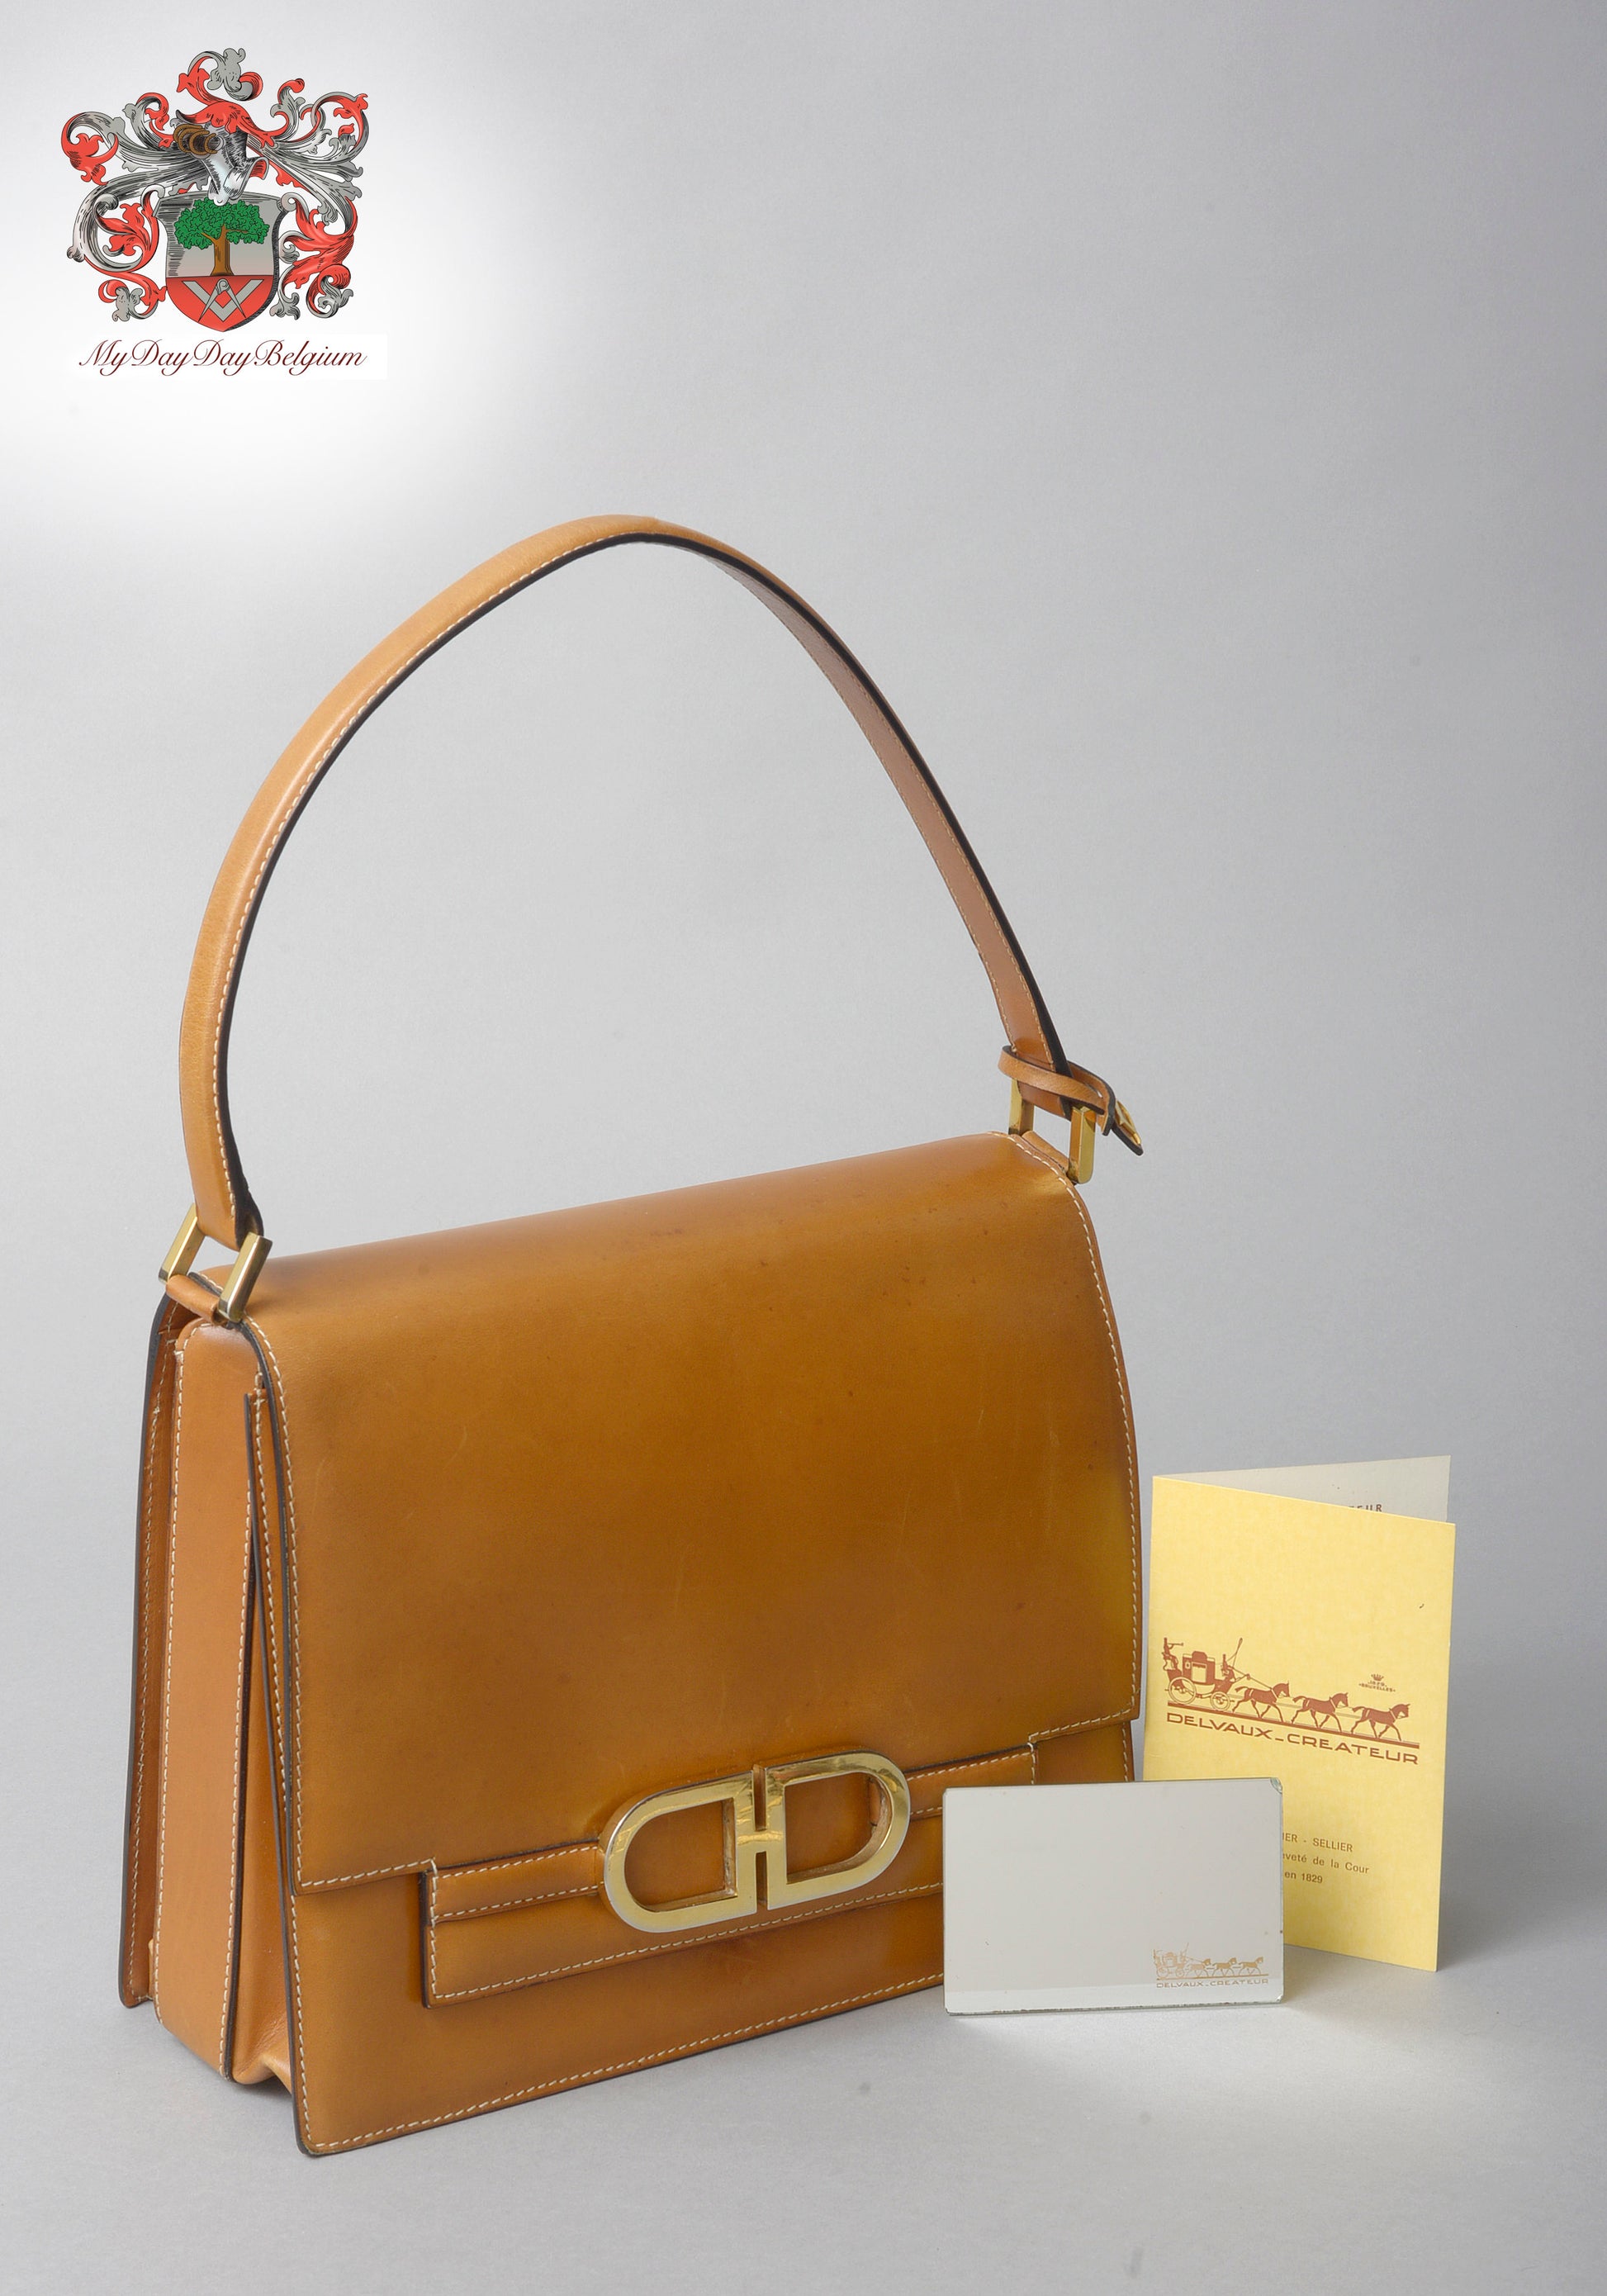 Vintage DELVAUX handbag﻿ ﻿ #bayapt #vintage #fashion #delvaux #bag